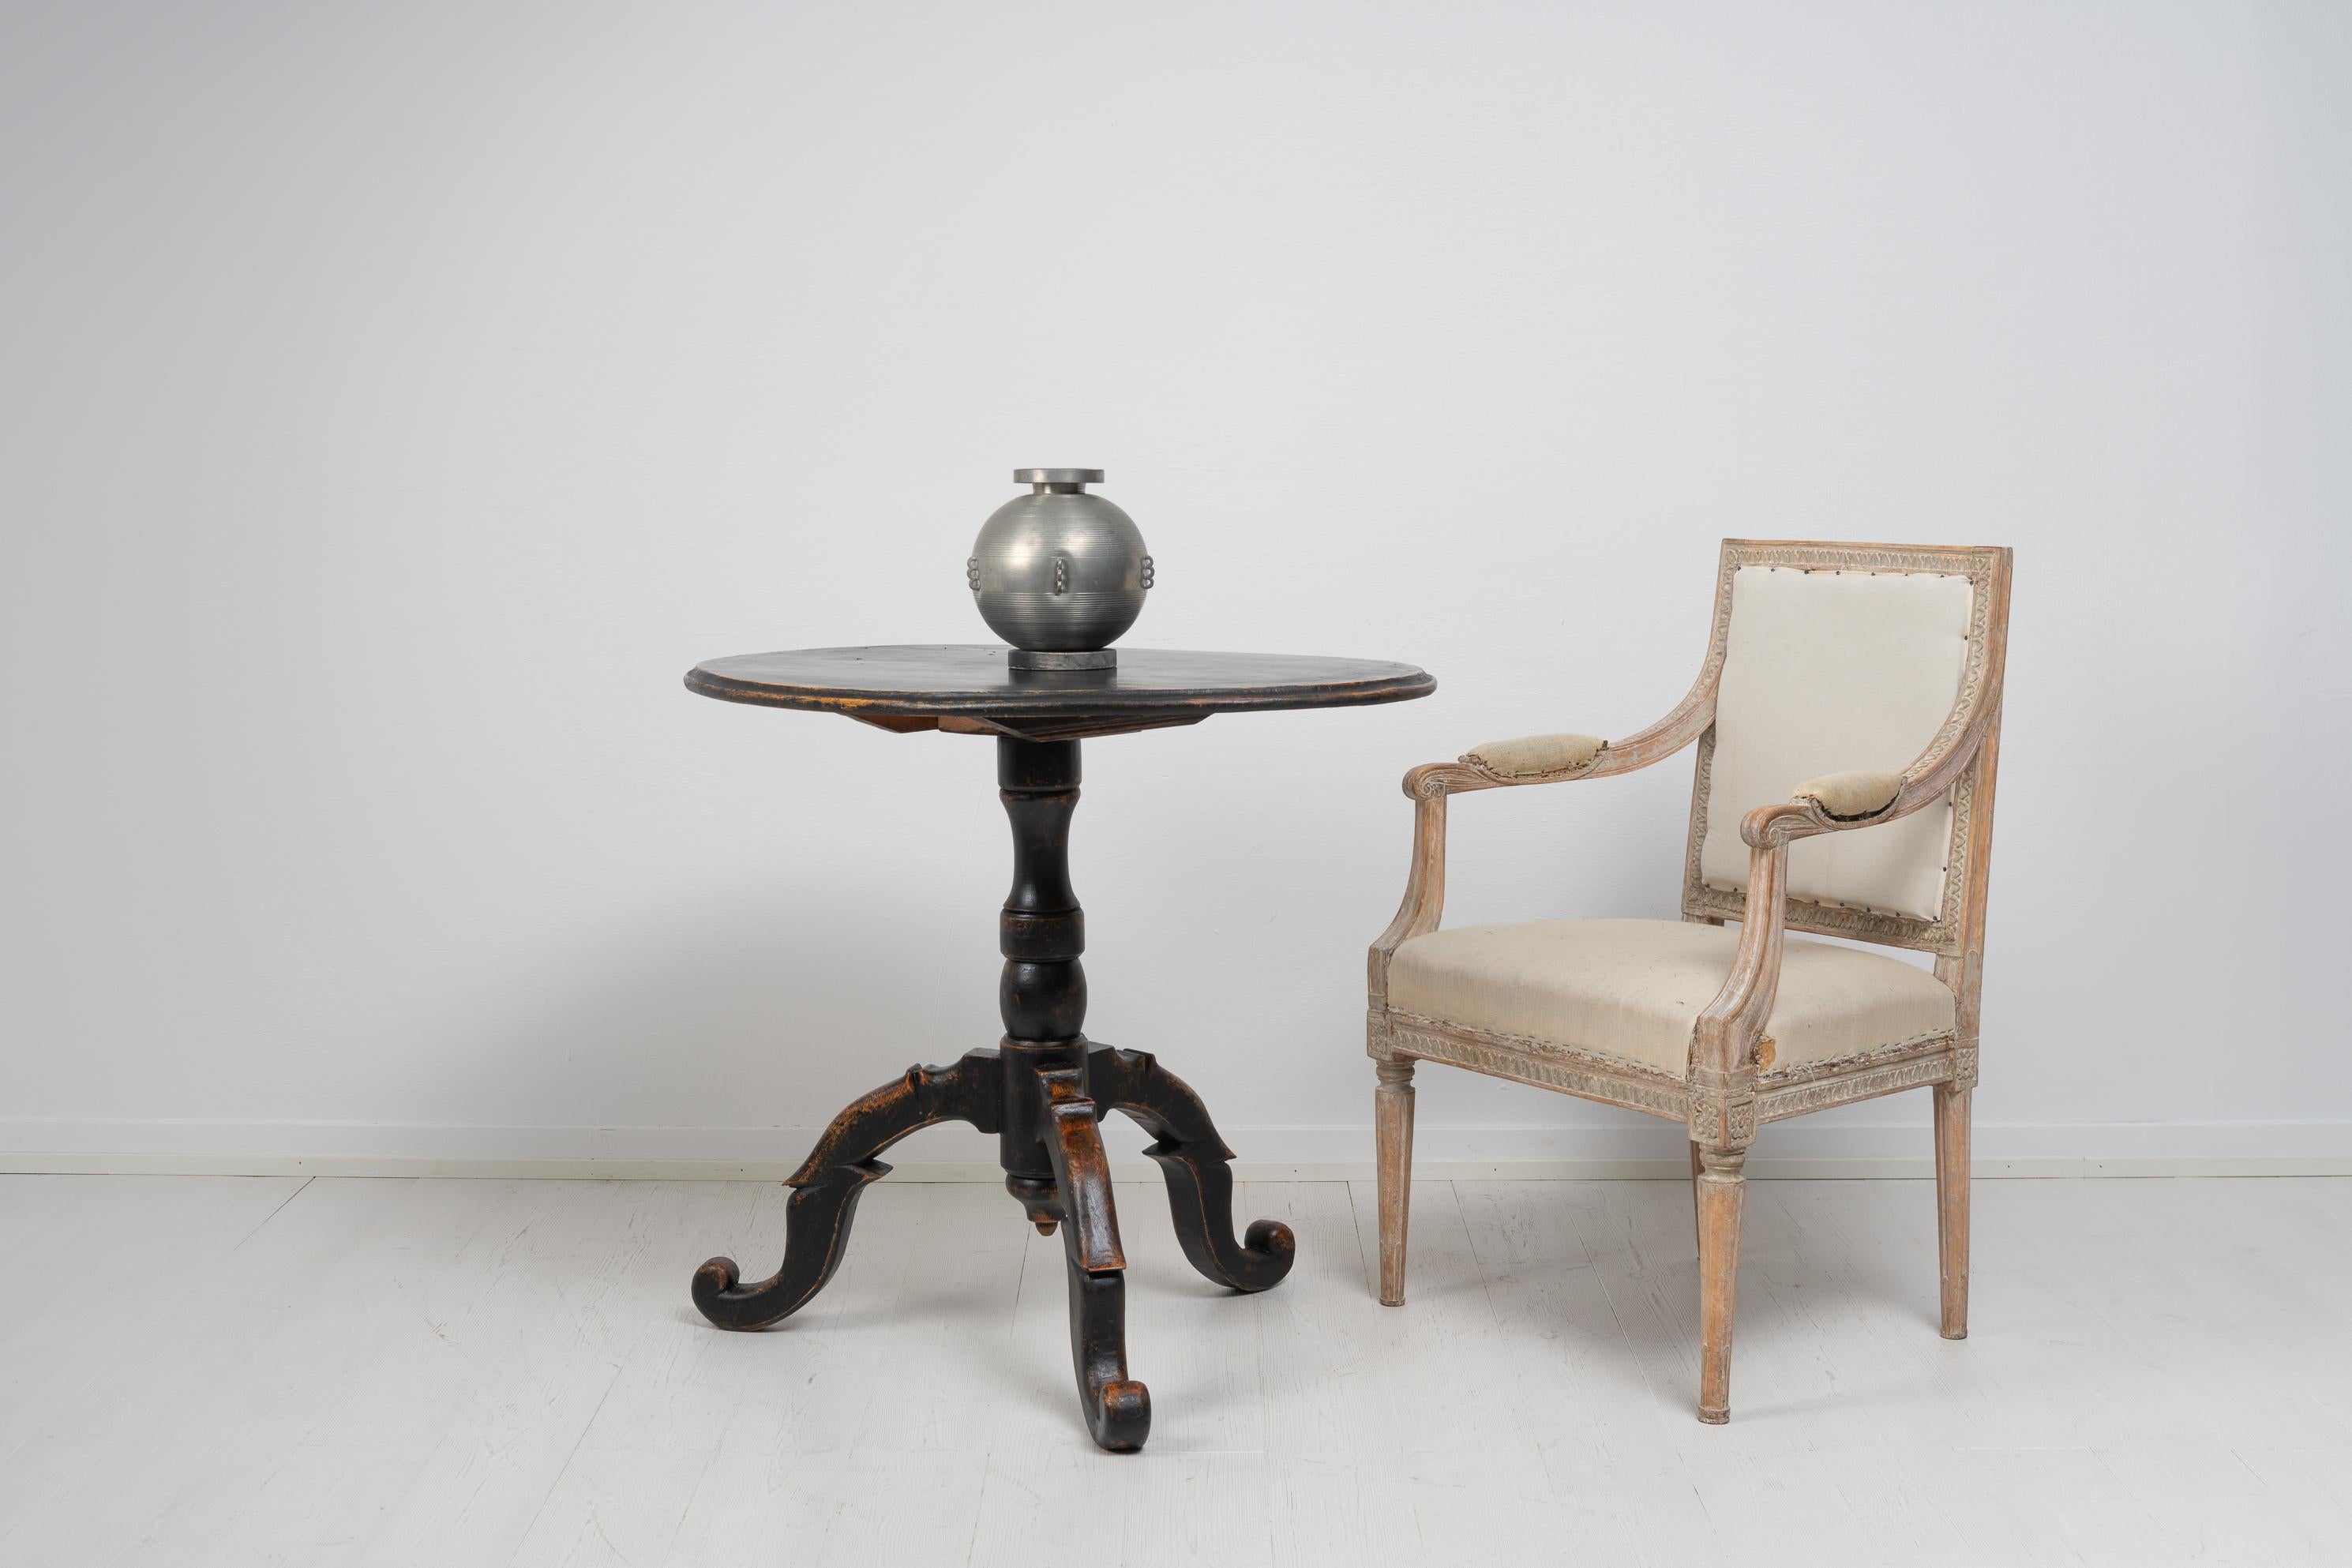 Schwedischer Tisch mit schwarzer Kippplatte aus der Mitte des 19. Jahrhunderts, um 1860. Der Tisch ist mit schwarzer Farbe gestrichen, die in Mitleidenschaft gezogen wurde, und das Holz darunter glänzt an einigen Stellen durch. Die Notlage verleiht